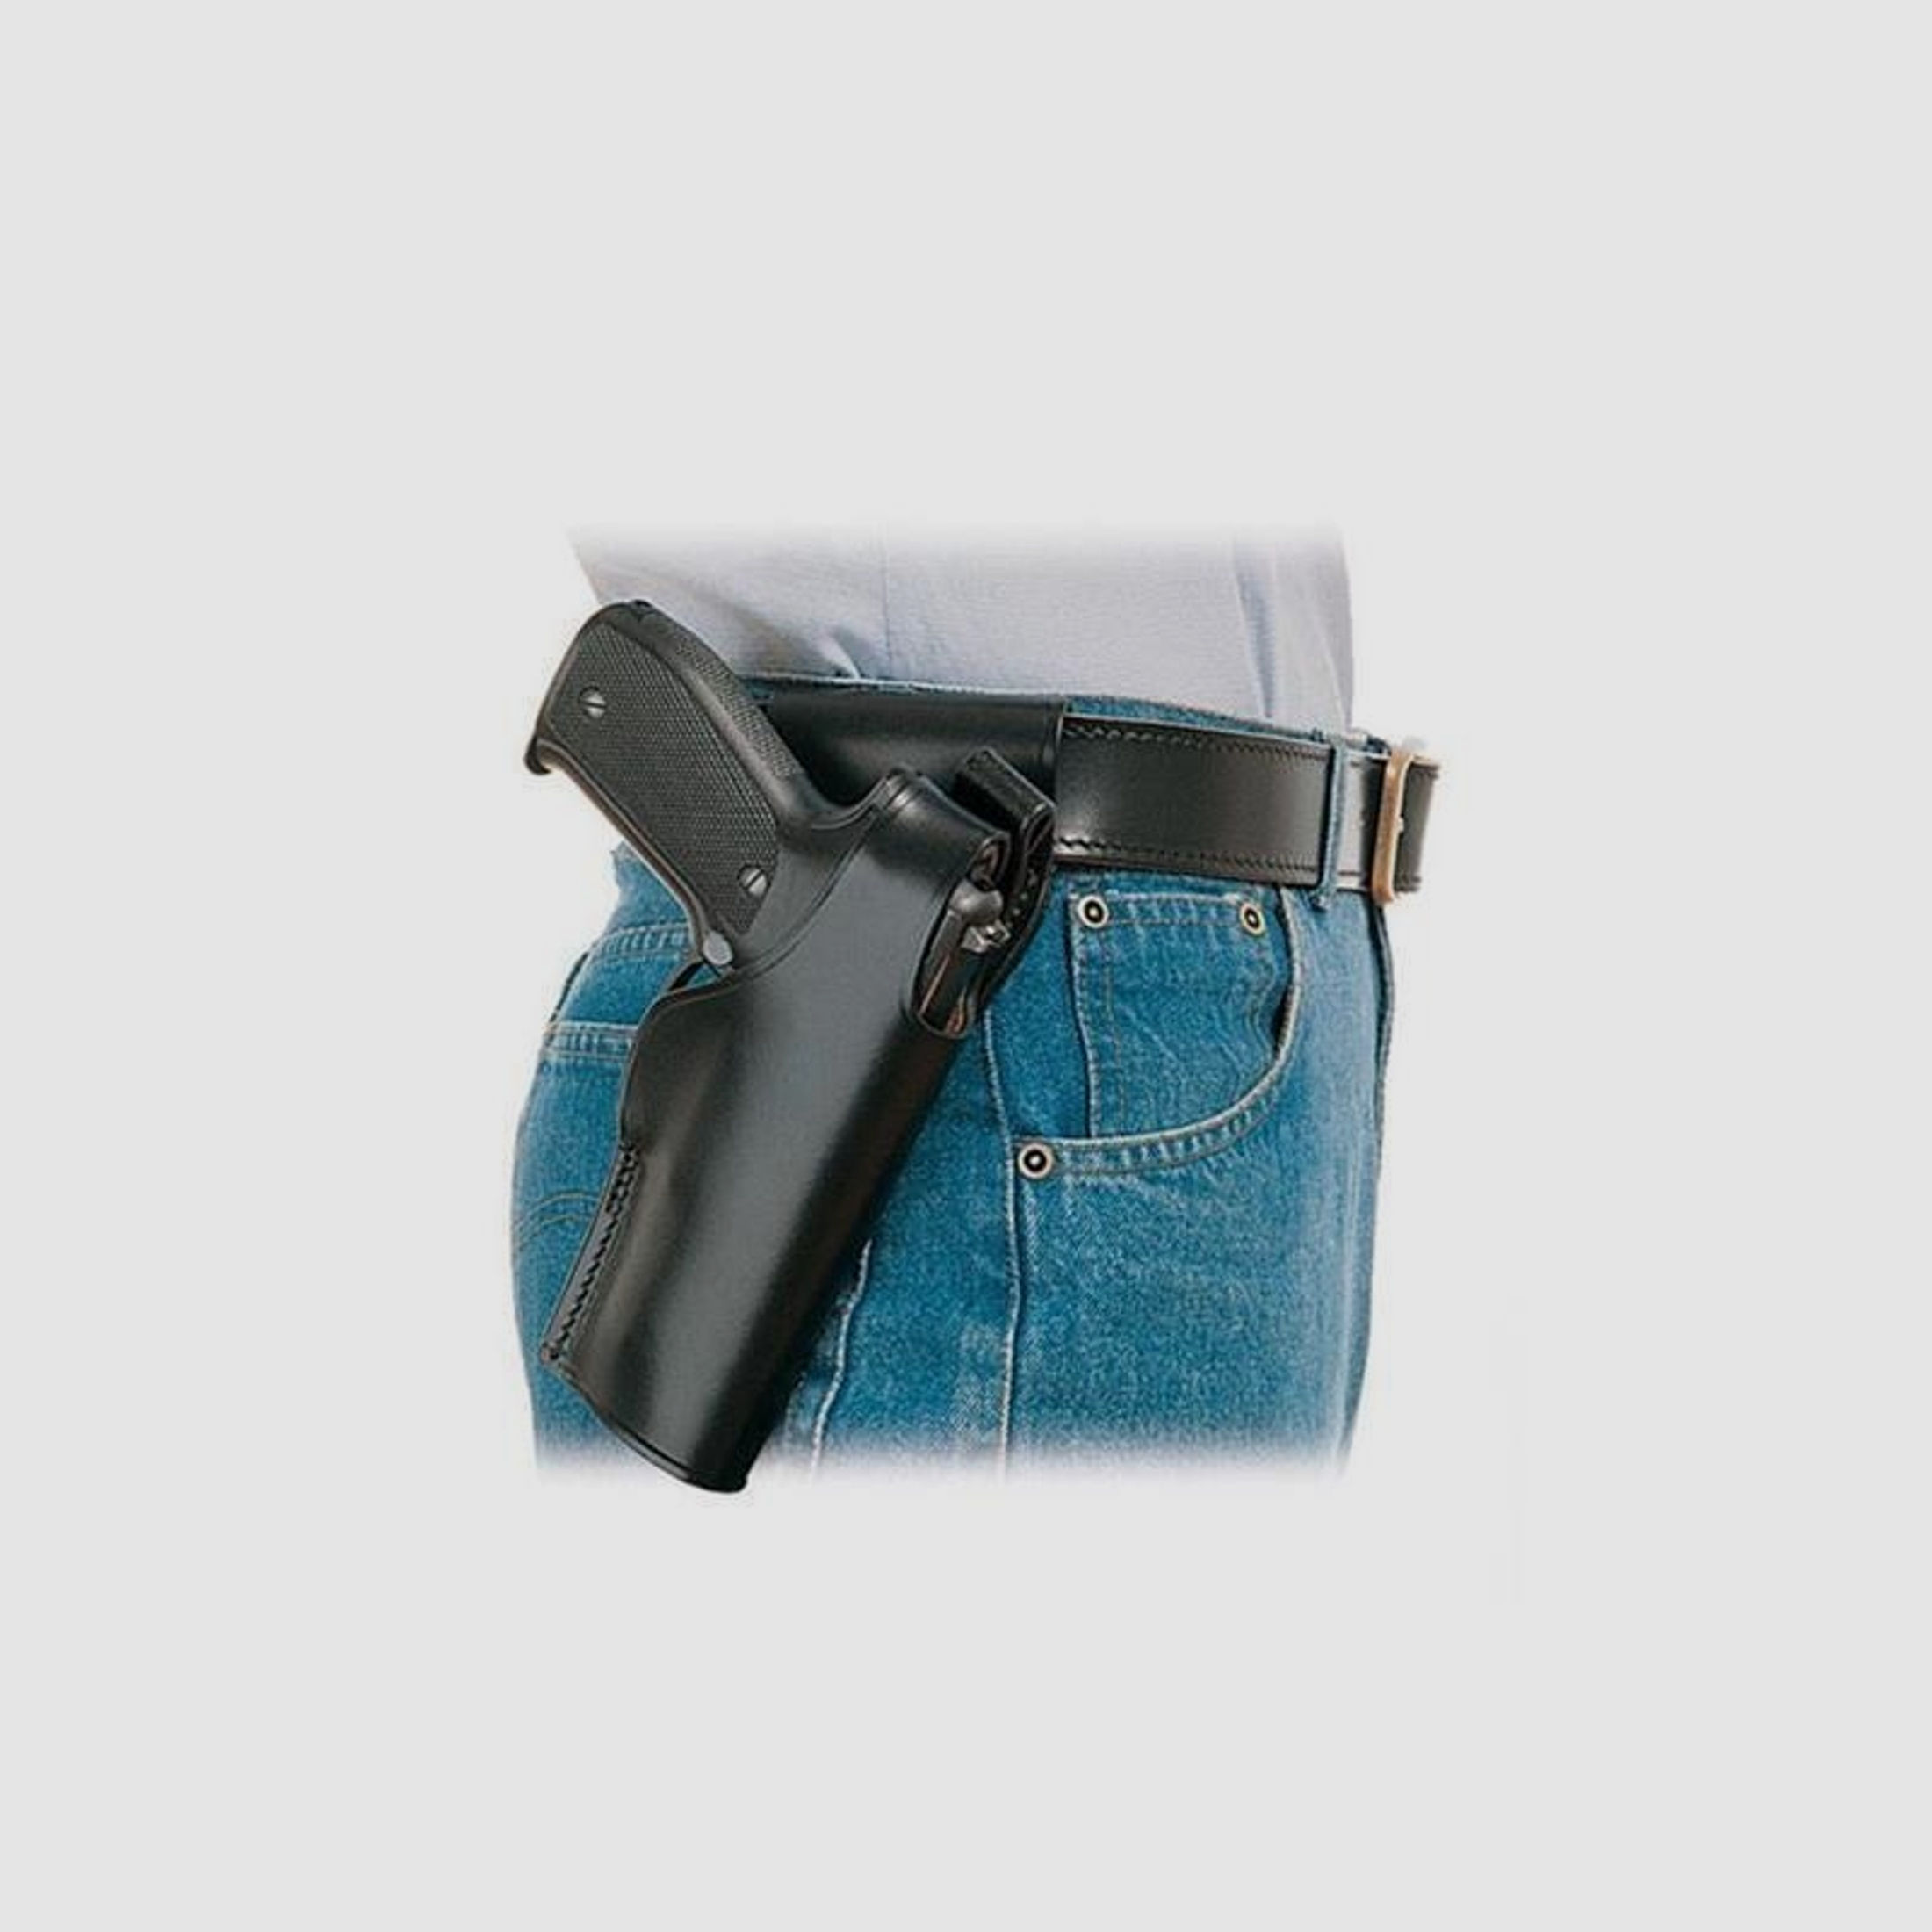 Gürtelholster SPITFIRE Glock 29/30 Schwarz Linkshänder